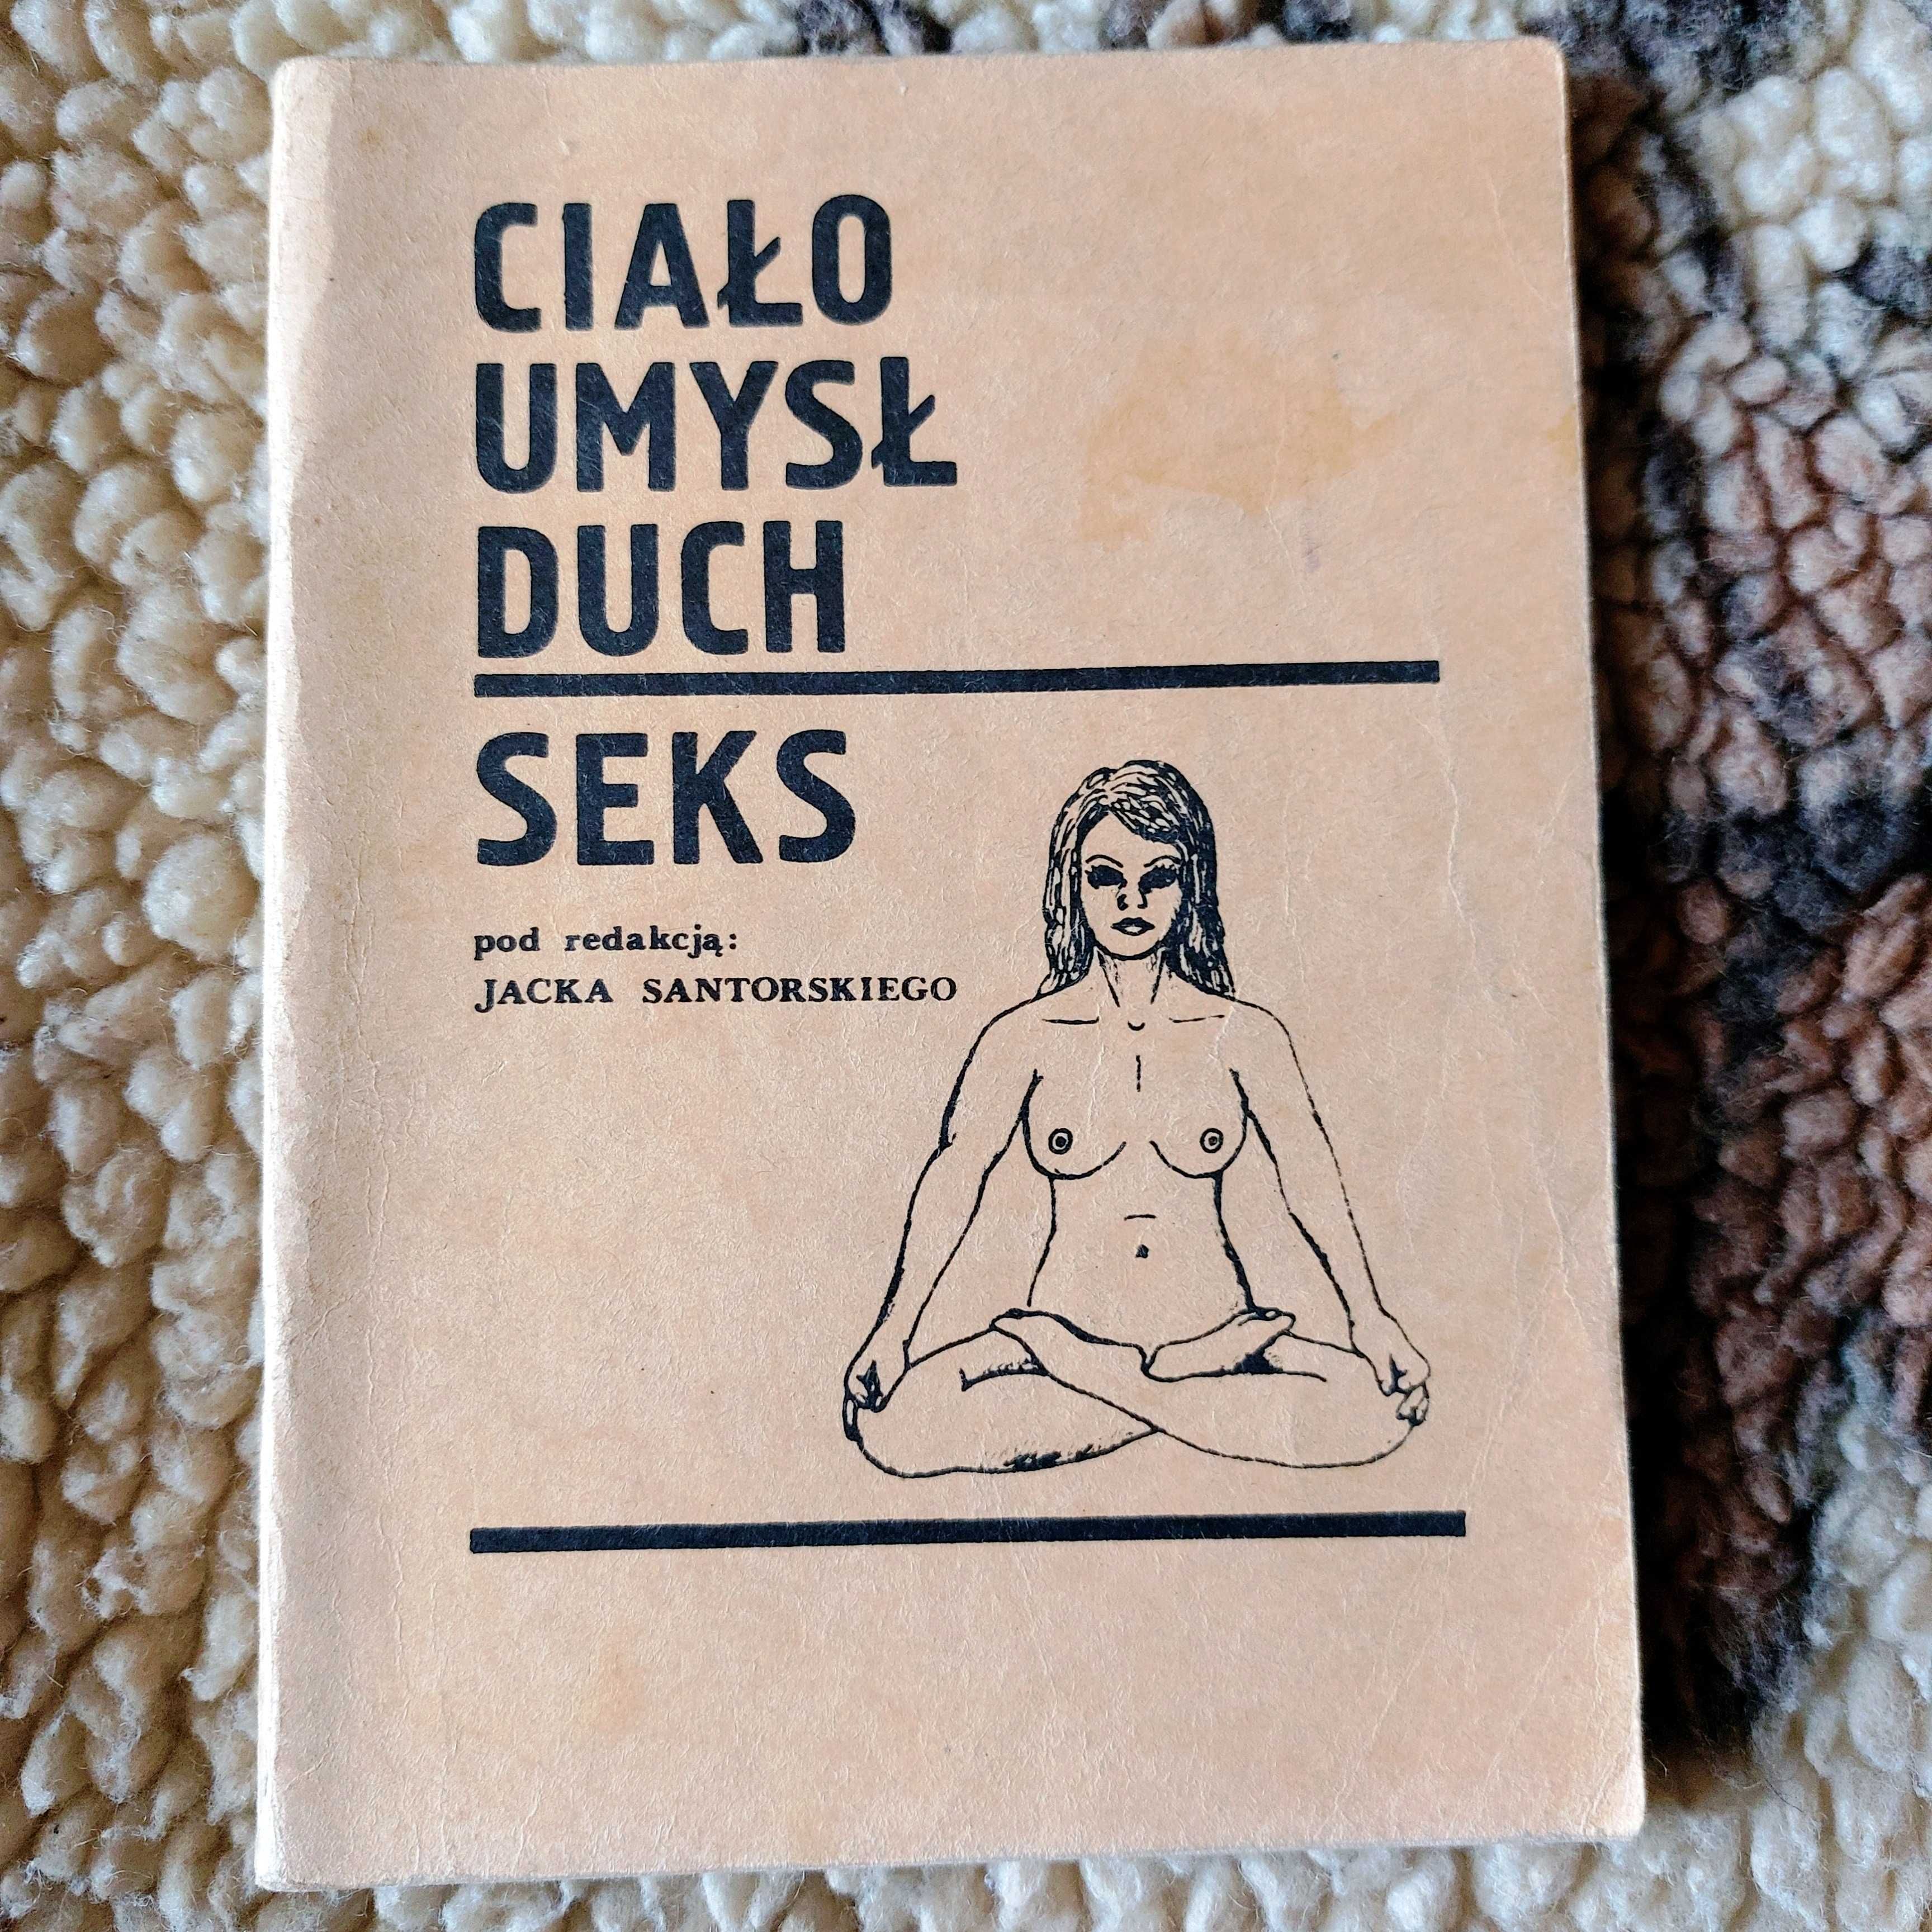 Ciało umysł duch seks - pod redakcją Jacka Santorskiego